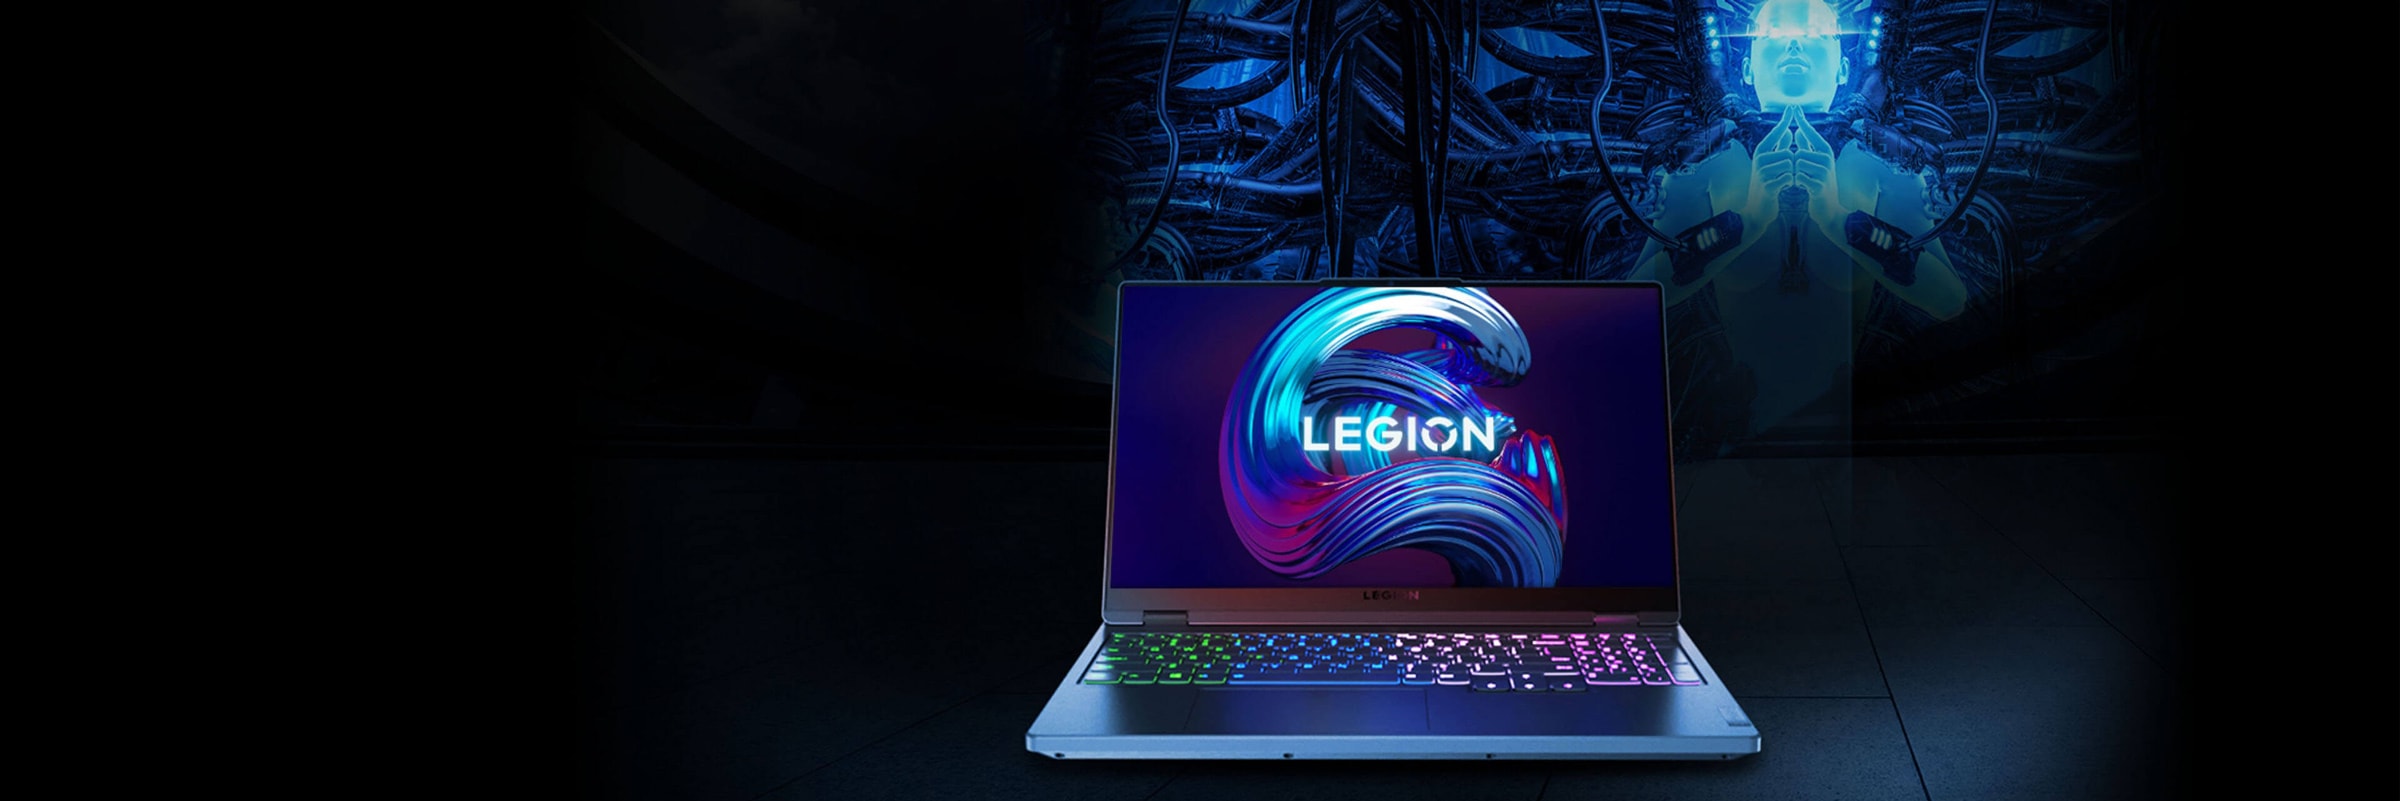 Вигляд спереду ноутбука Legion, відкритого на 90 градусів, показано екран і клавіатуру.